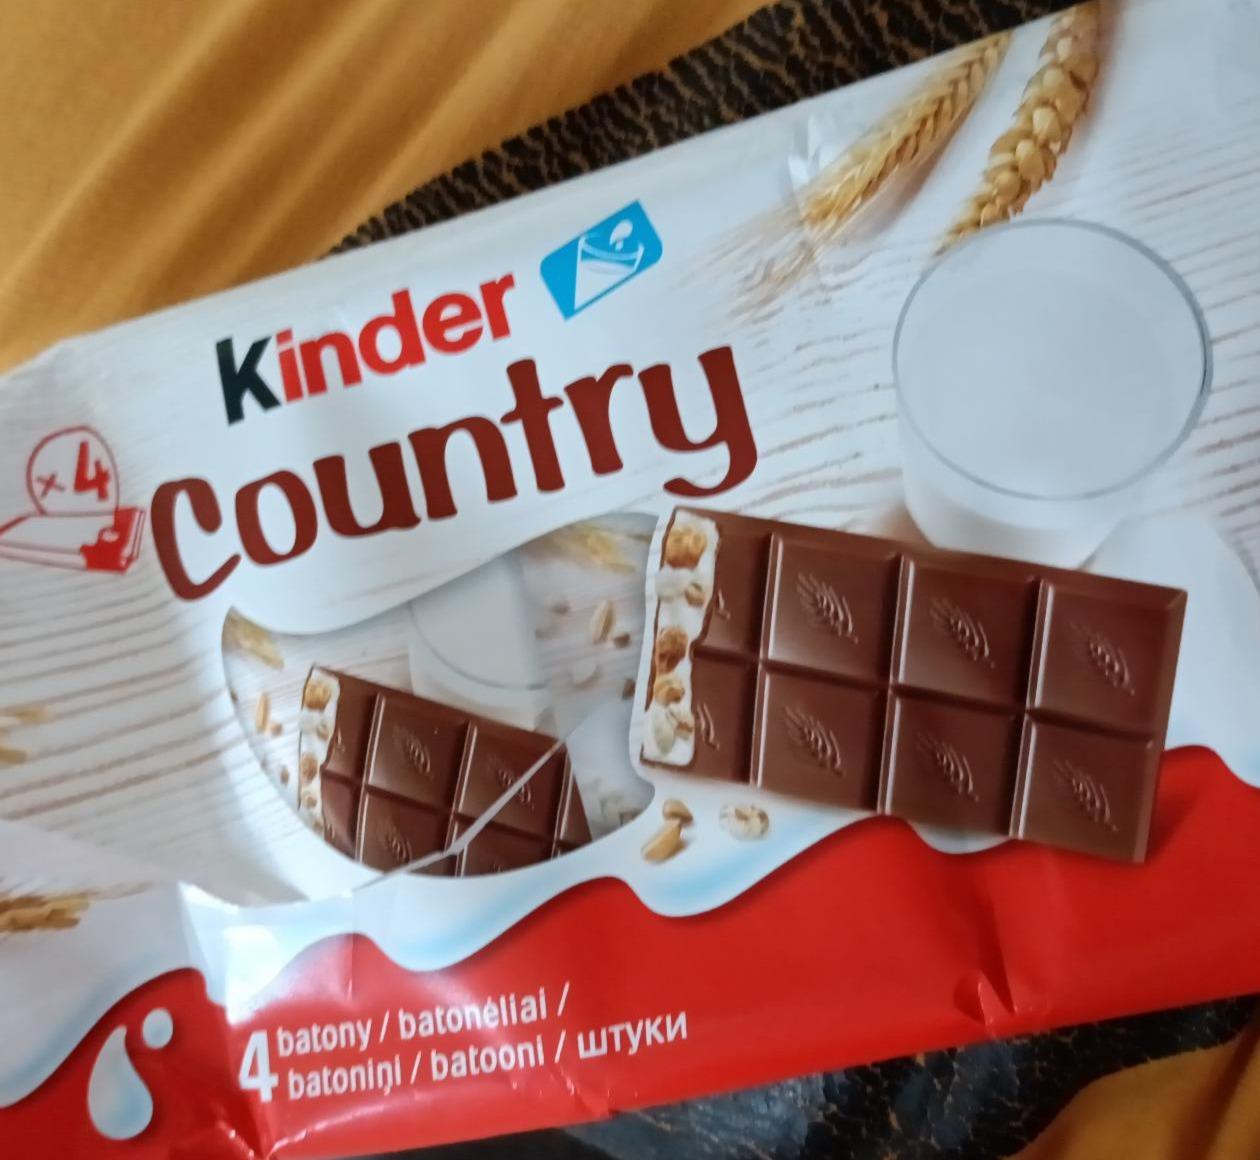 Képek - Kinder country csoki